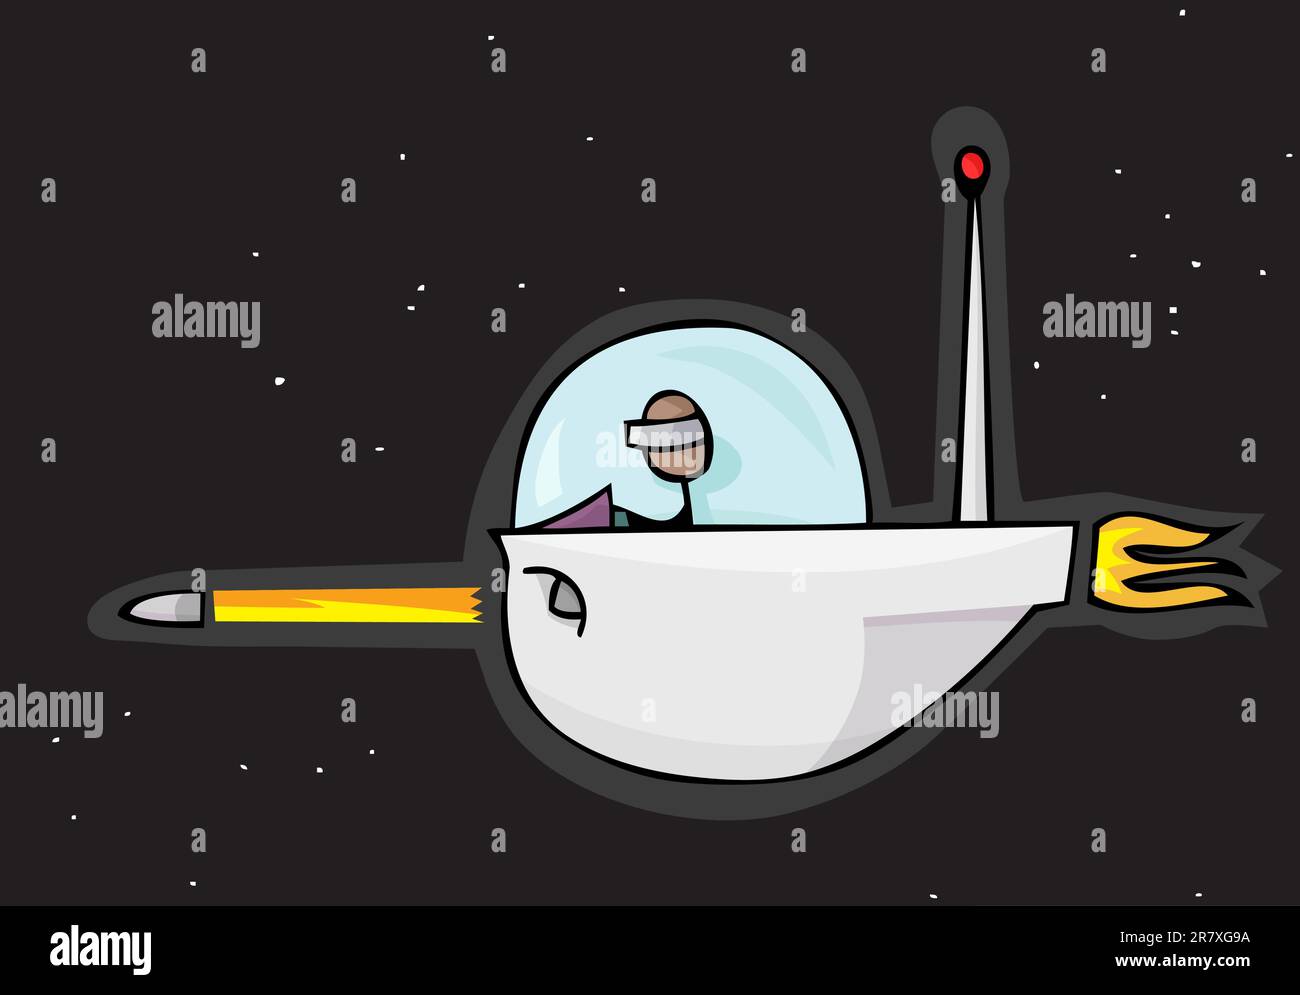 Alien stick personne tire un missile à partir d'un bateau Illustration de Vecteur